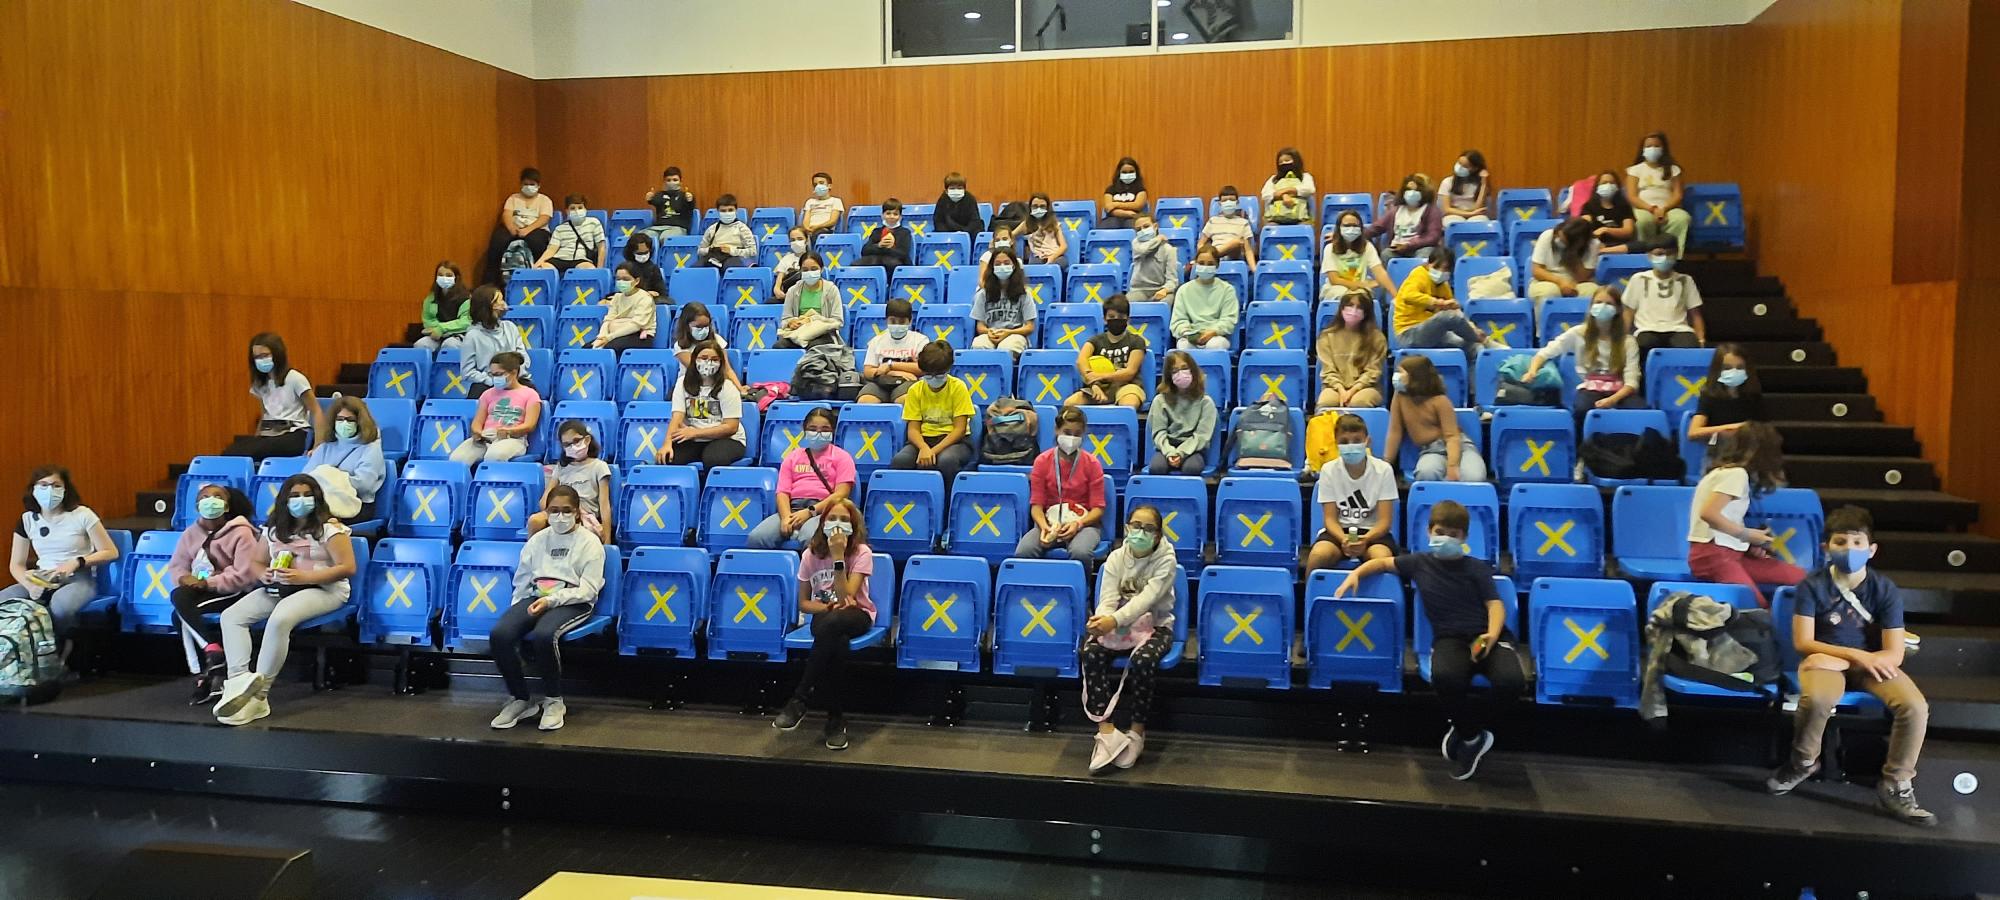 Sessão de sensibilização aos alunos no auditório por parte da Musami